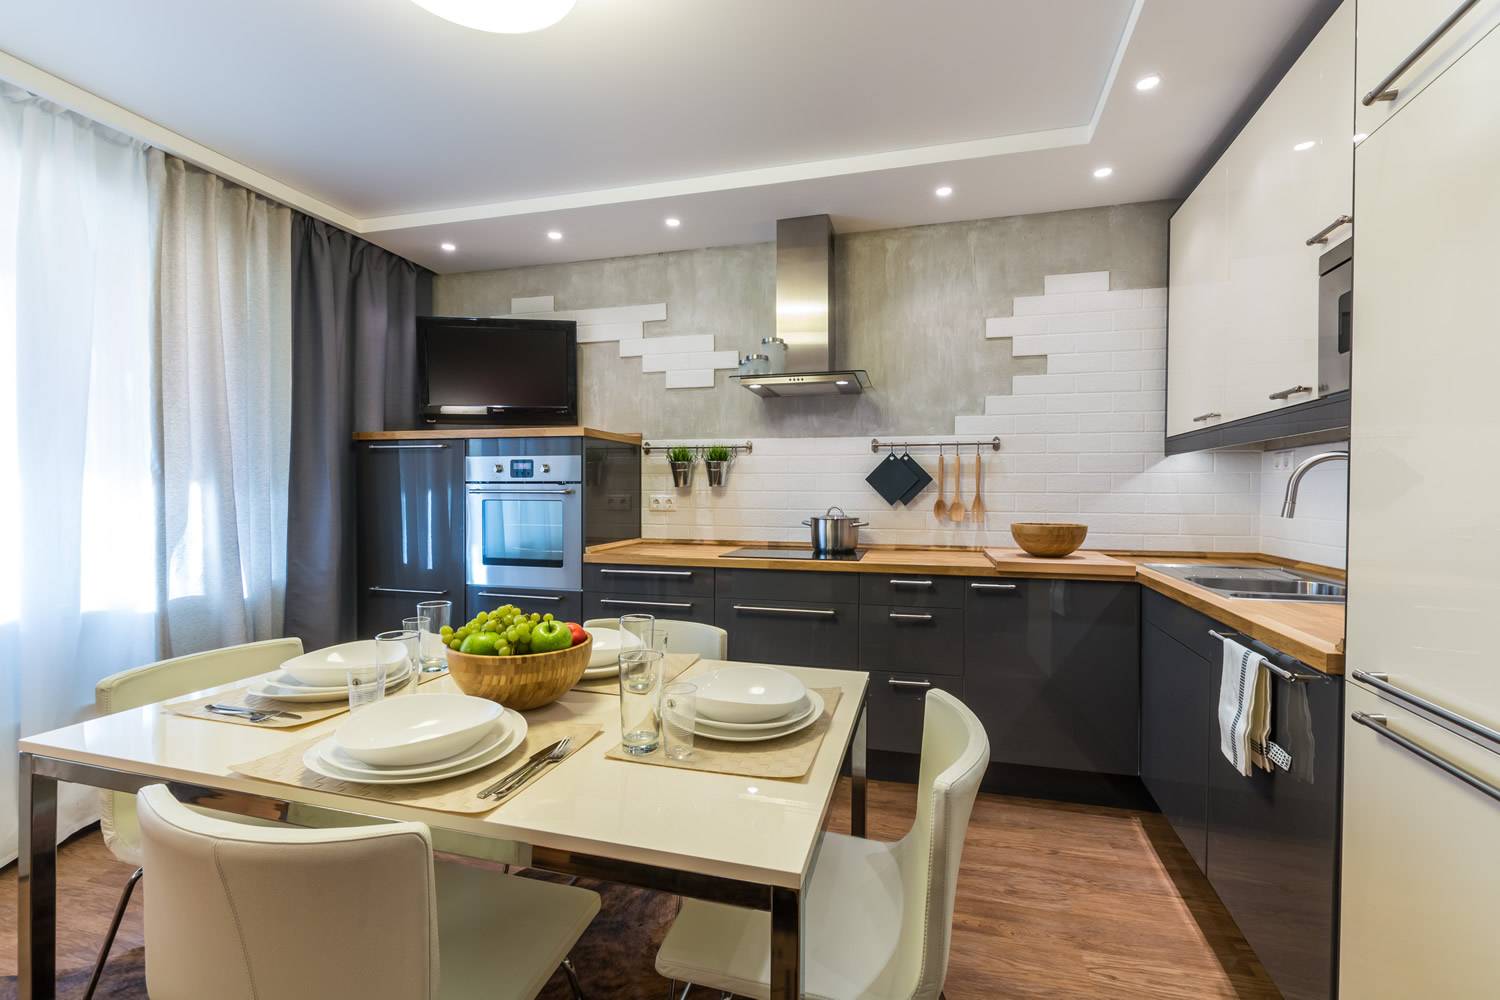 Кухня 14 кв. м. — обзор лучших идей по планировке стильного дизайна (70 фото)